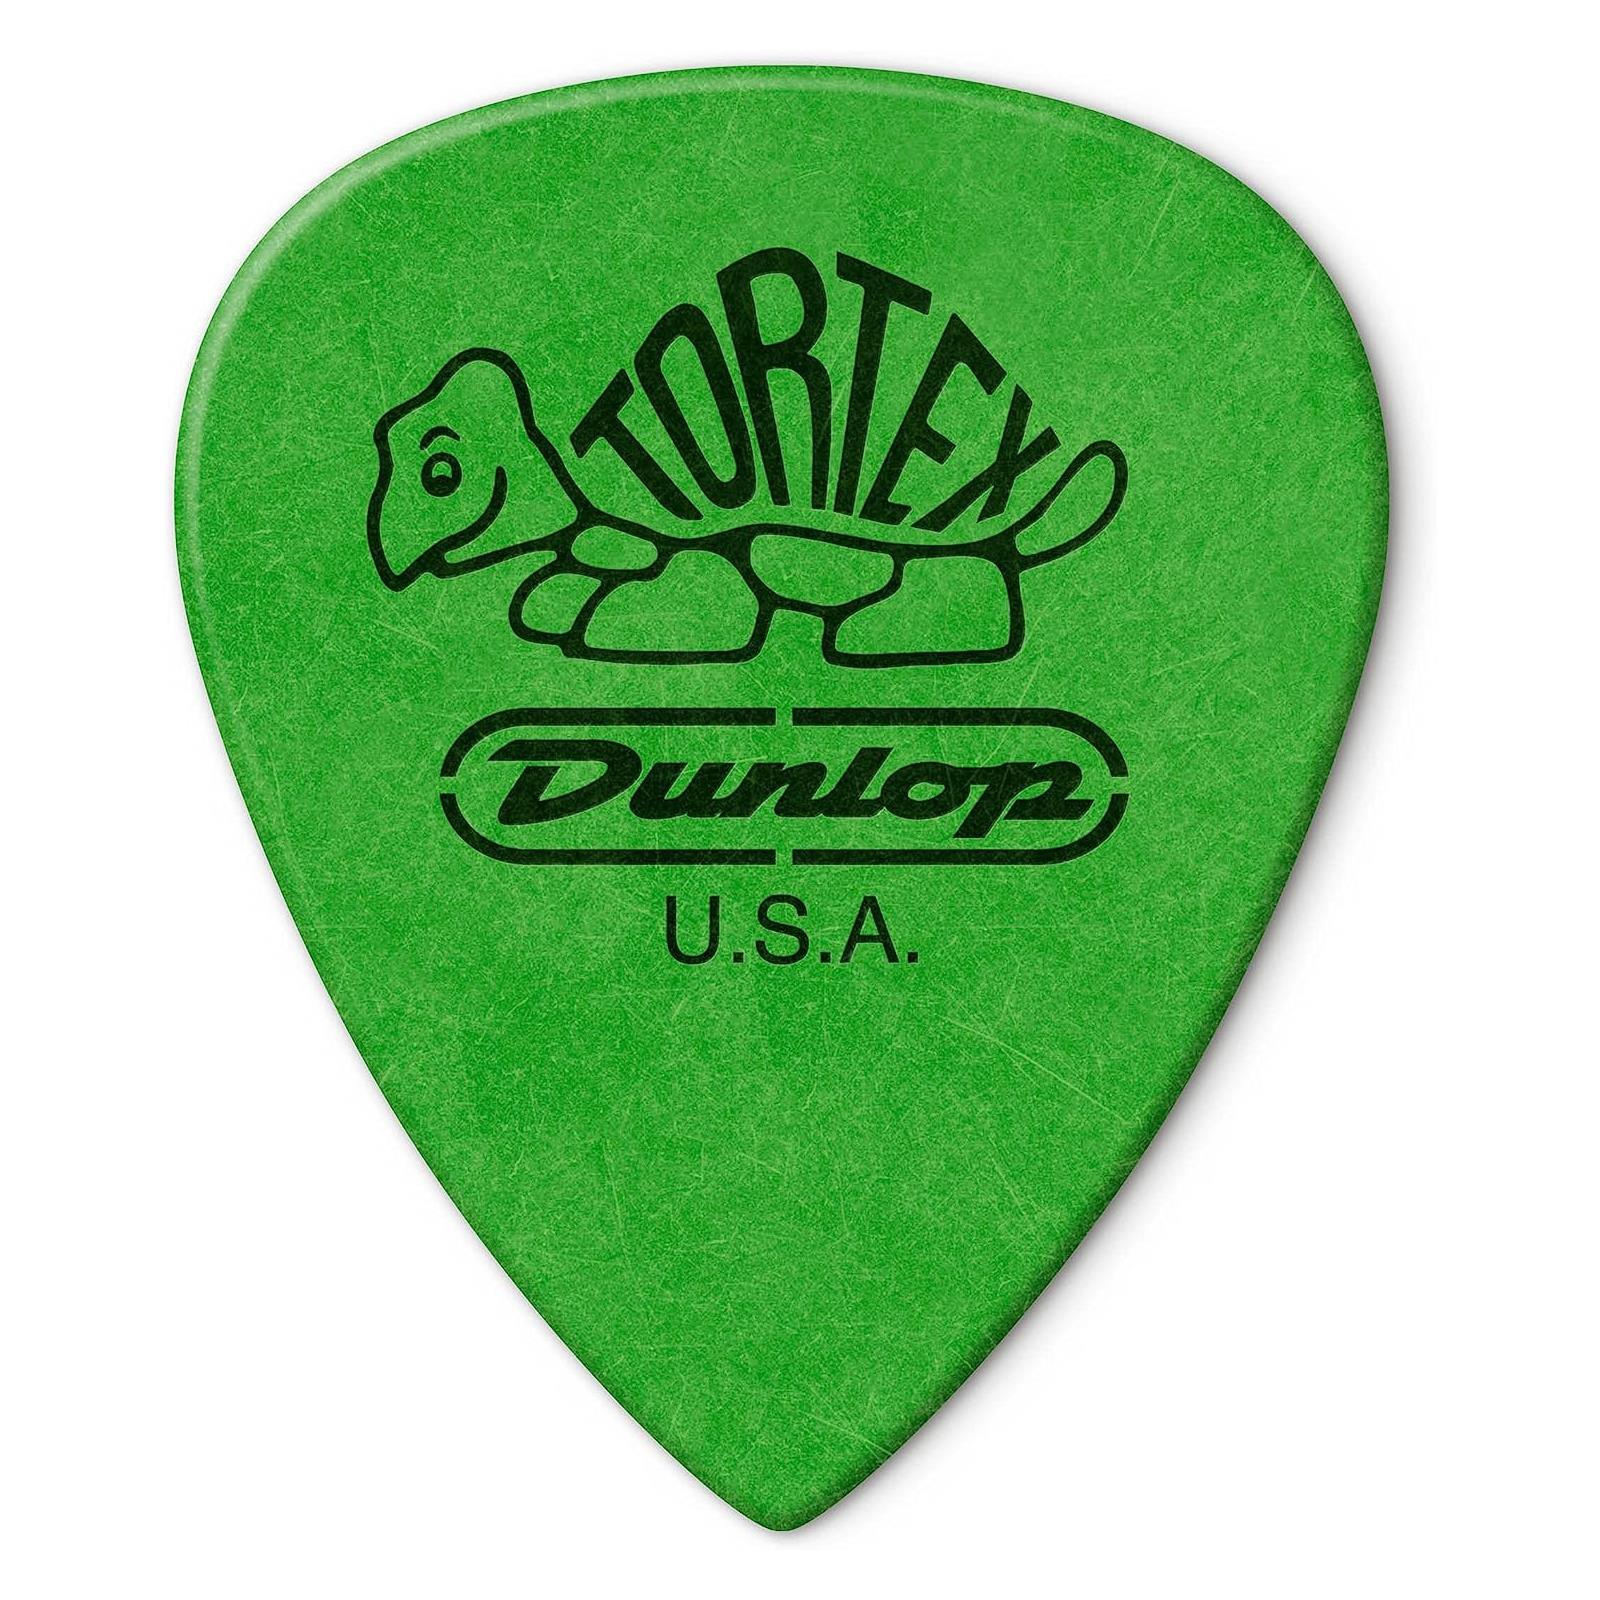 Dunlop .88 Tortex Standard Pack 12